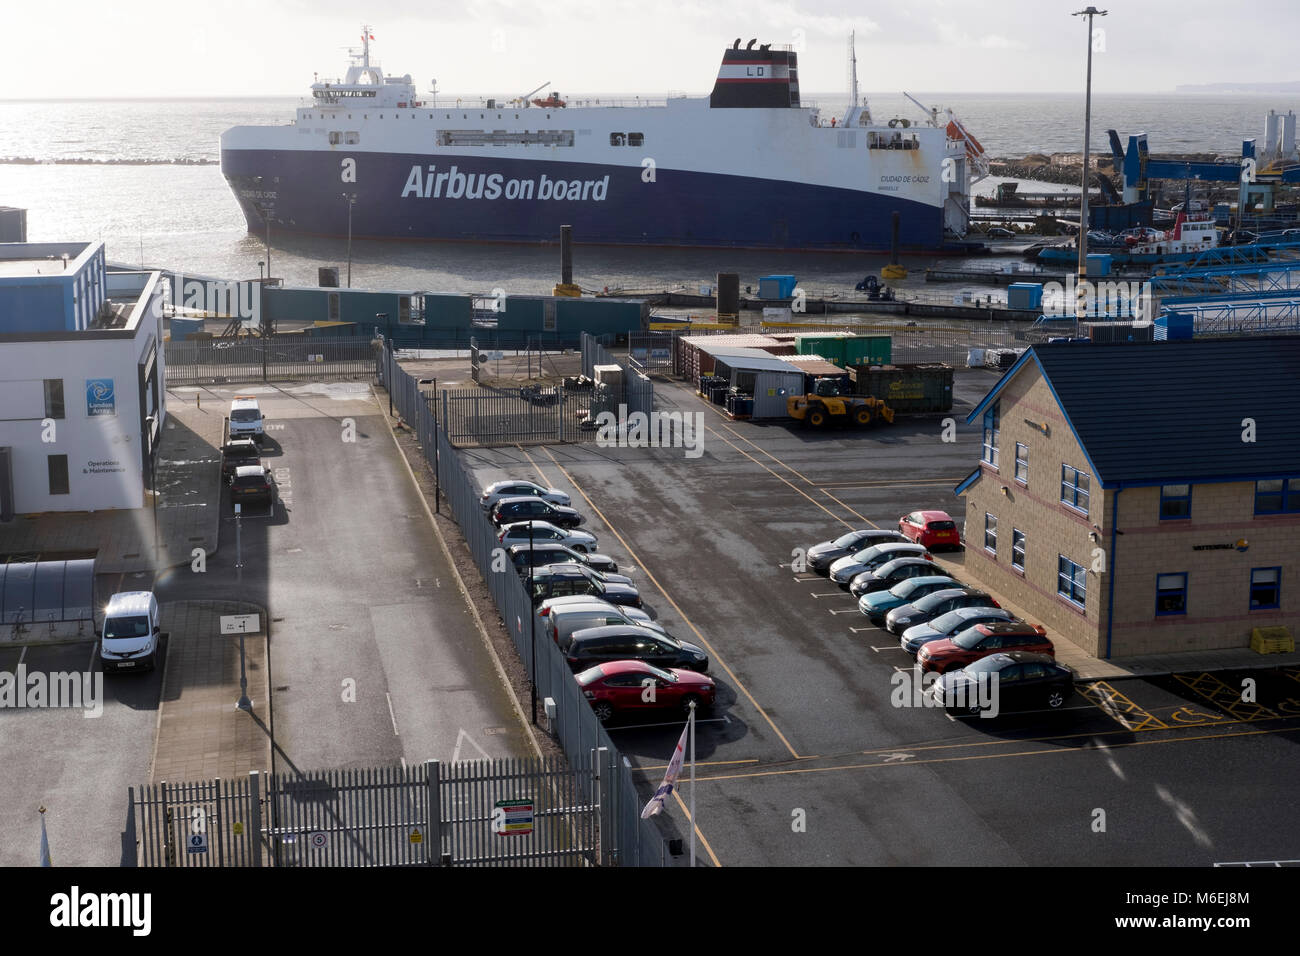 Il Ciudad De Cadiz traghetti roll-on/roll-off in docking Ramsgate porta pezzi per Airbus A380 tra gli stabilimenti in Europa e nel Regno Unito. Foto Stock